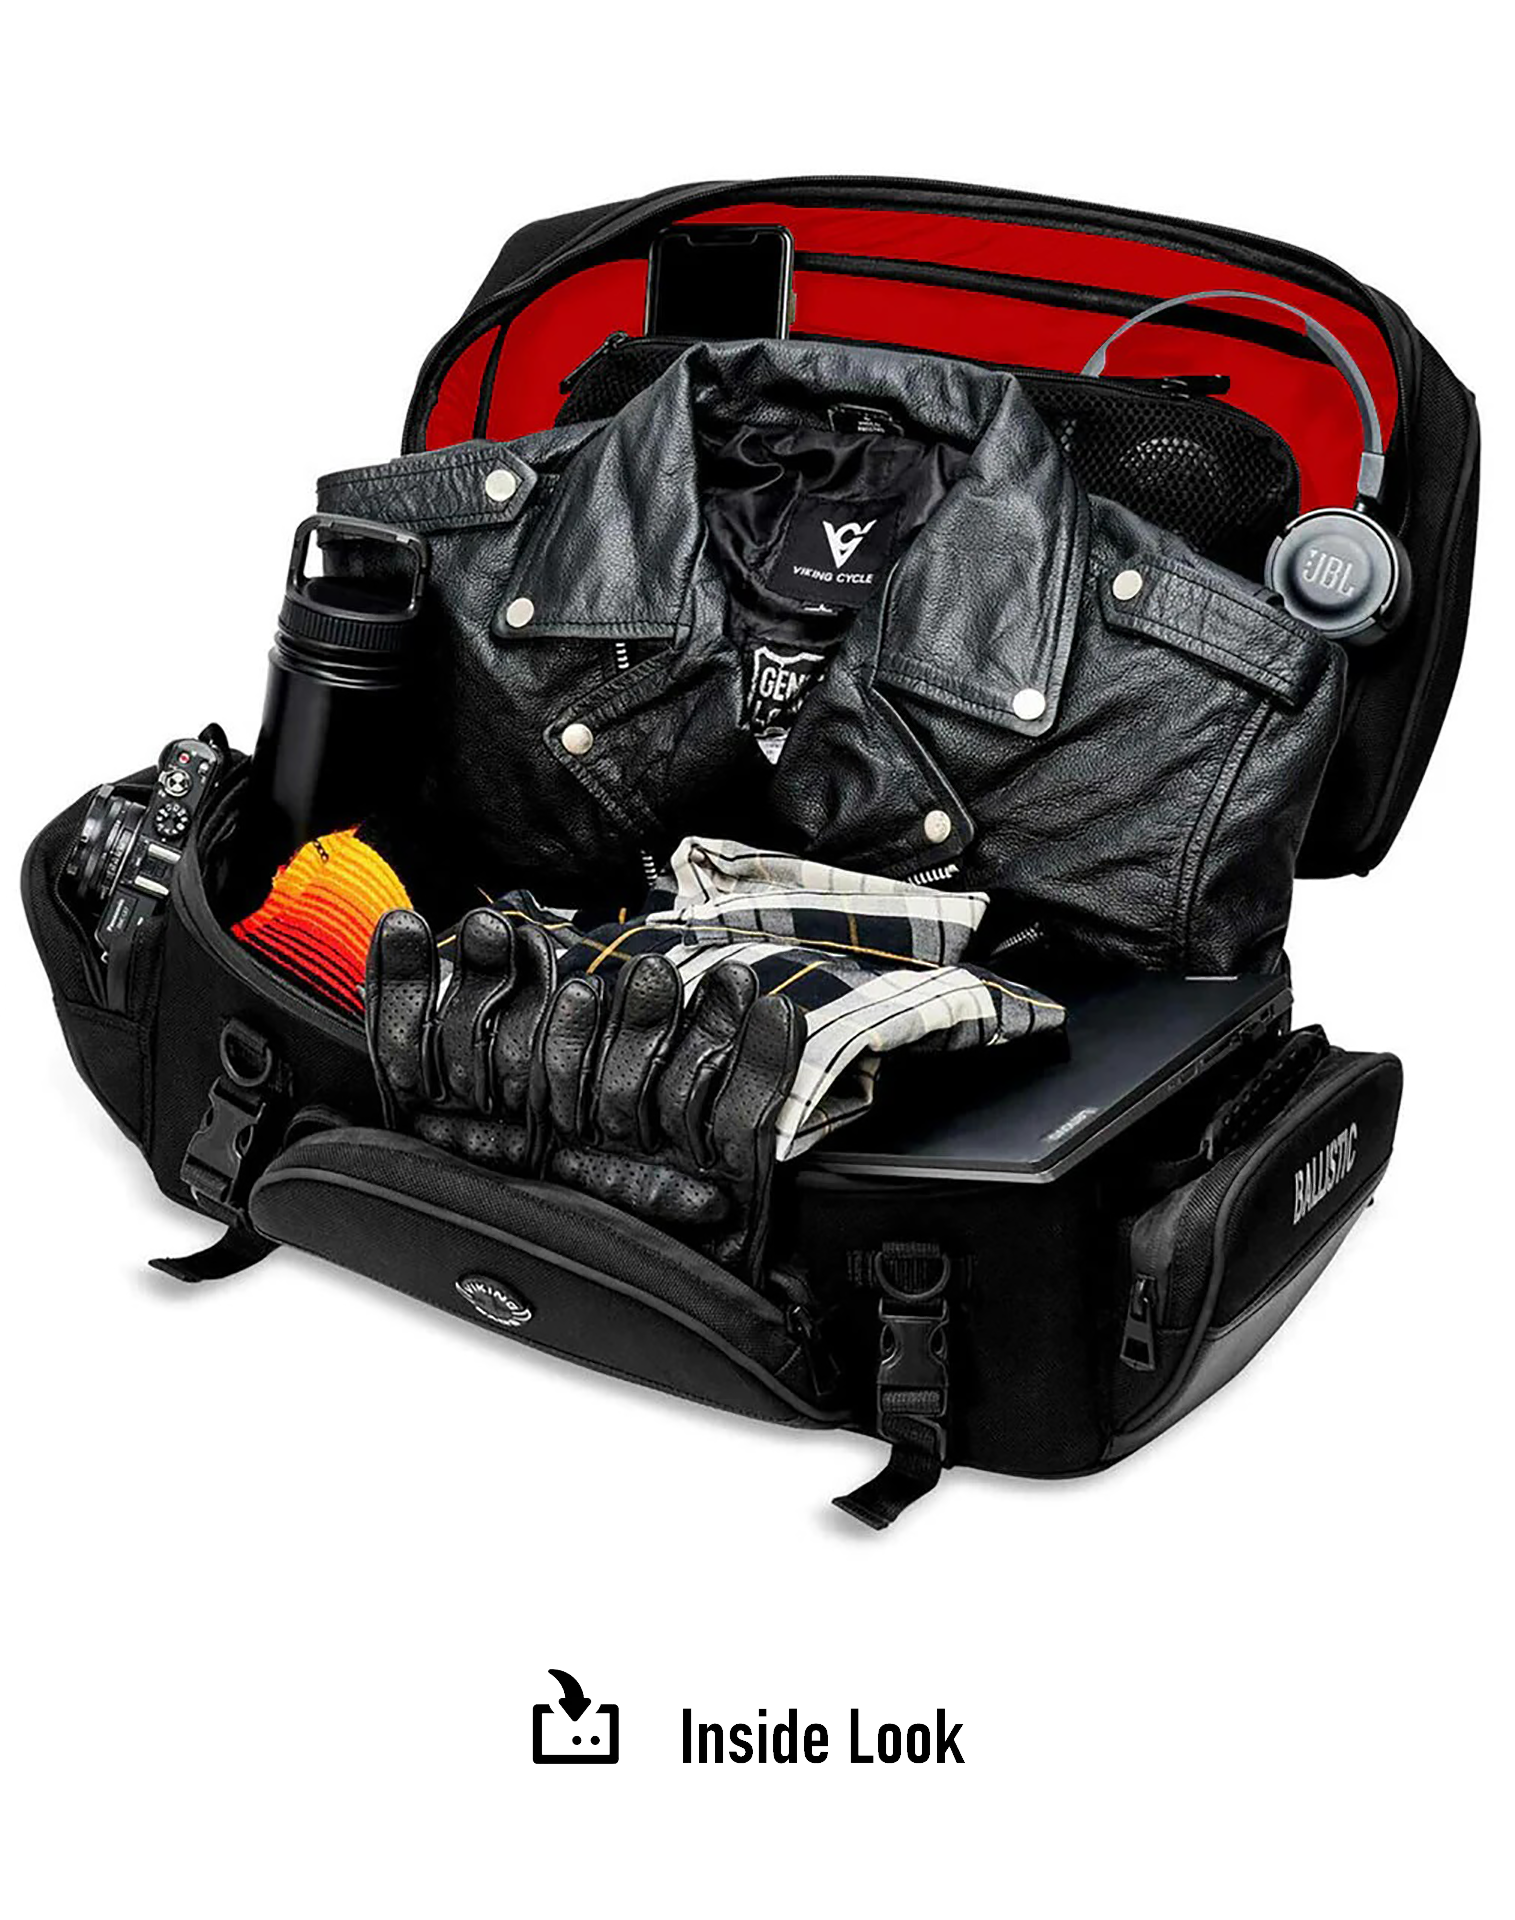 42L - Voyage Elite XL Motorcycle Luggage Rack Bag